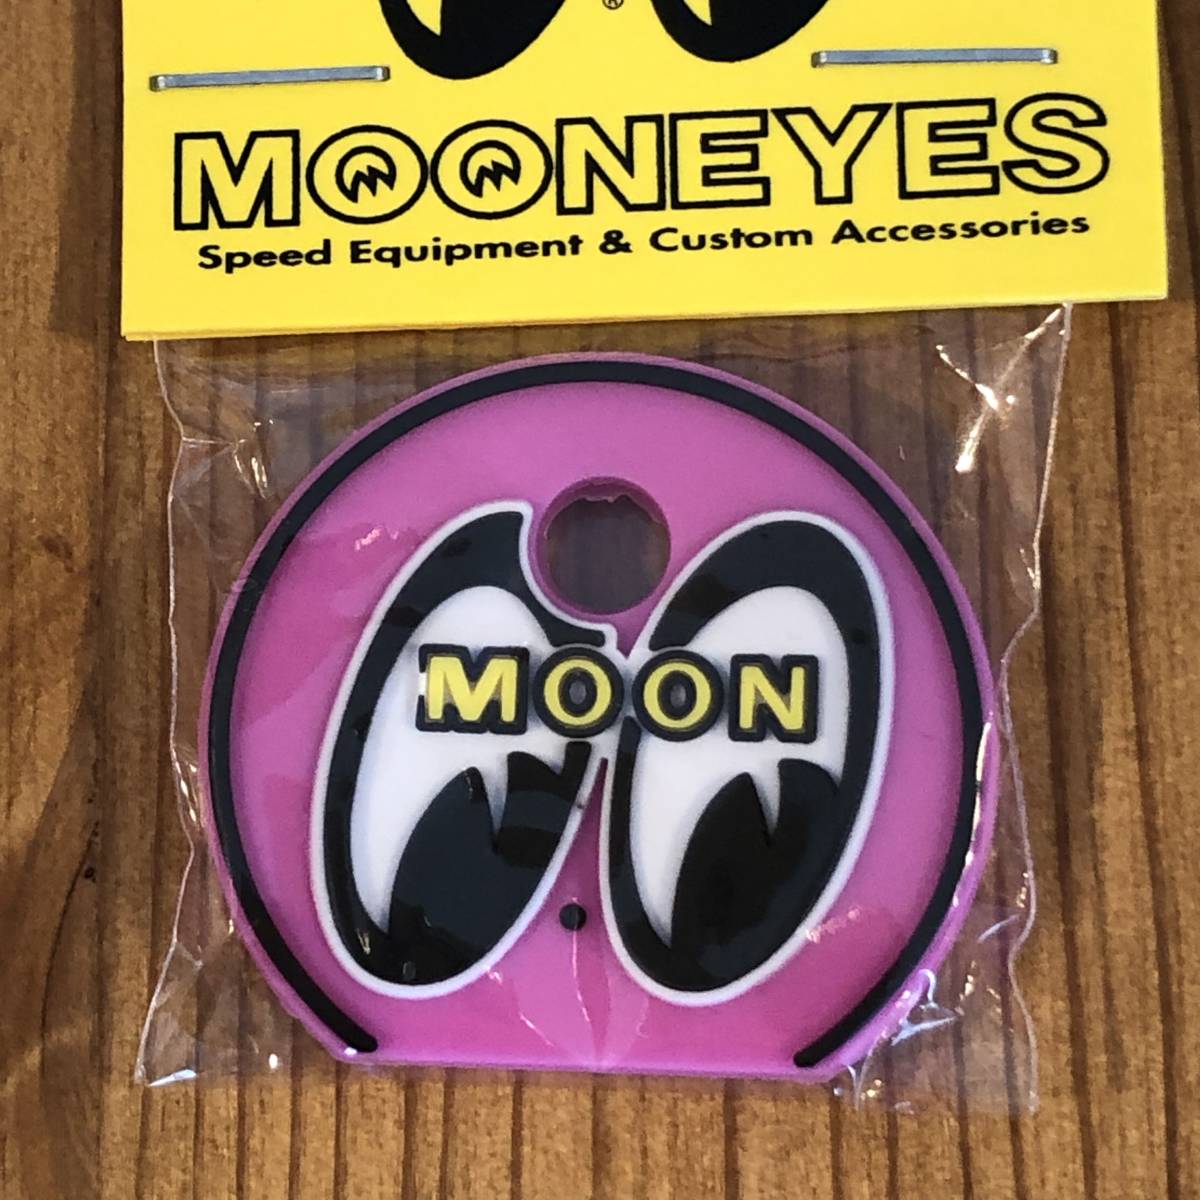 mooneyes ムーンアイズ アイボール キーキャップ ピンク ぺったんこ 絵柄は立体 キーホルダー moon eyes eyeball 色違いでぜひどうぞの画像1